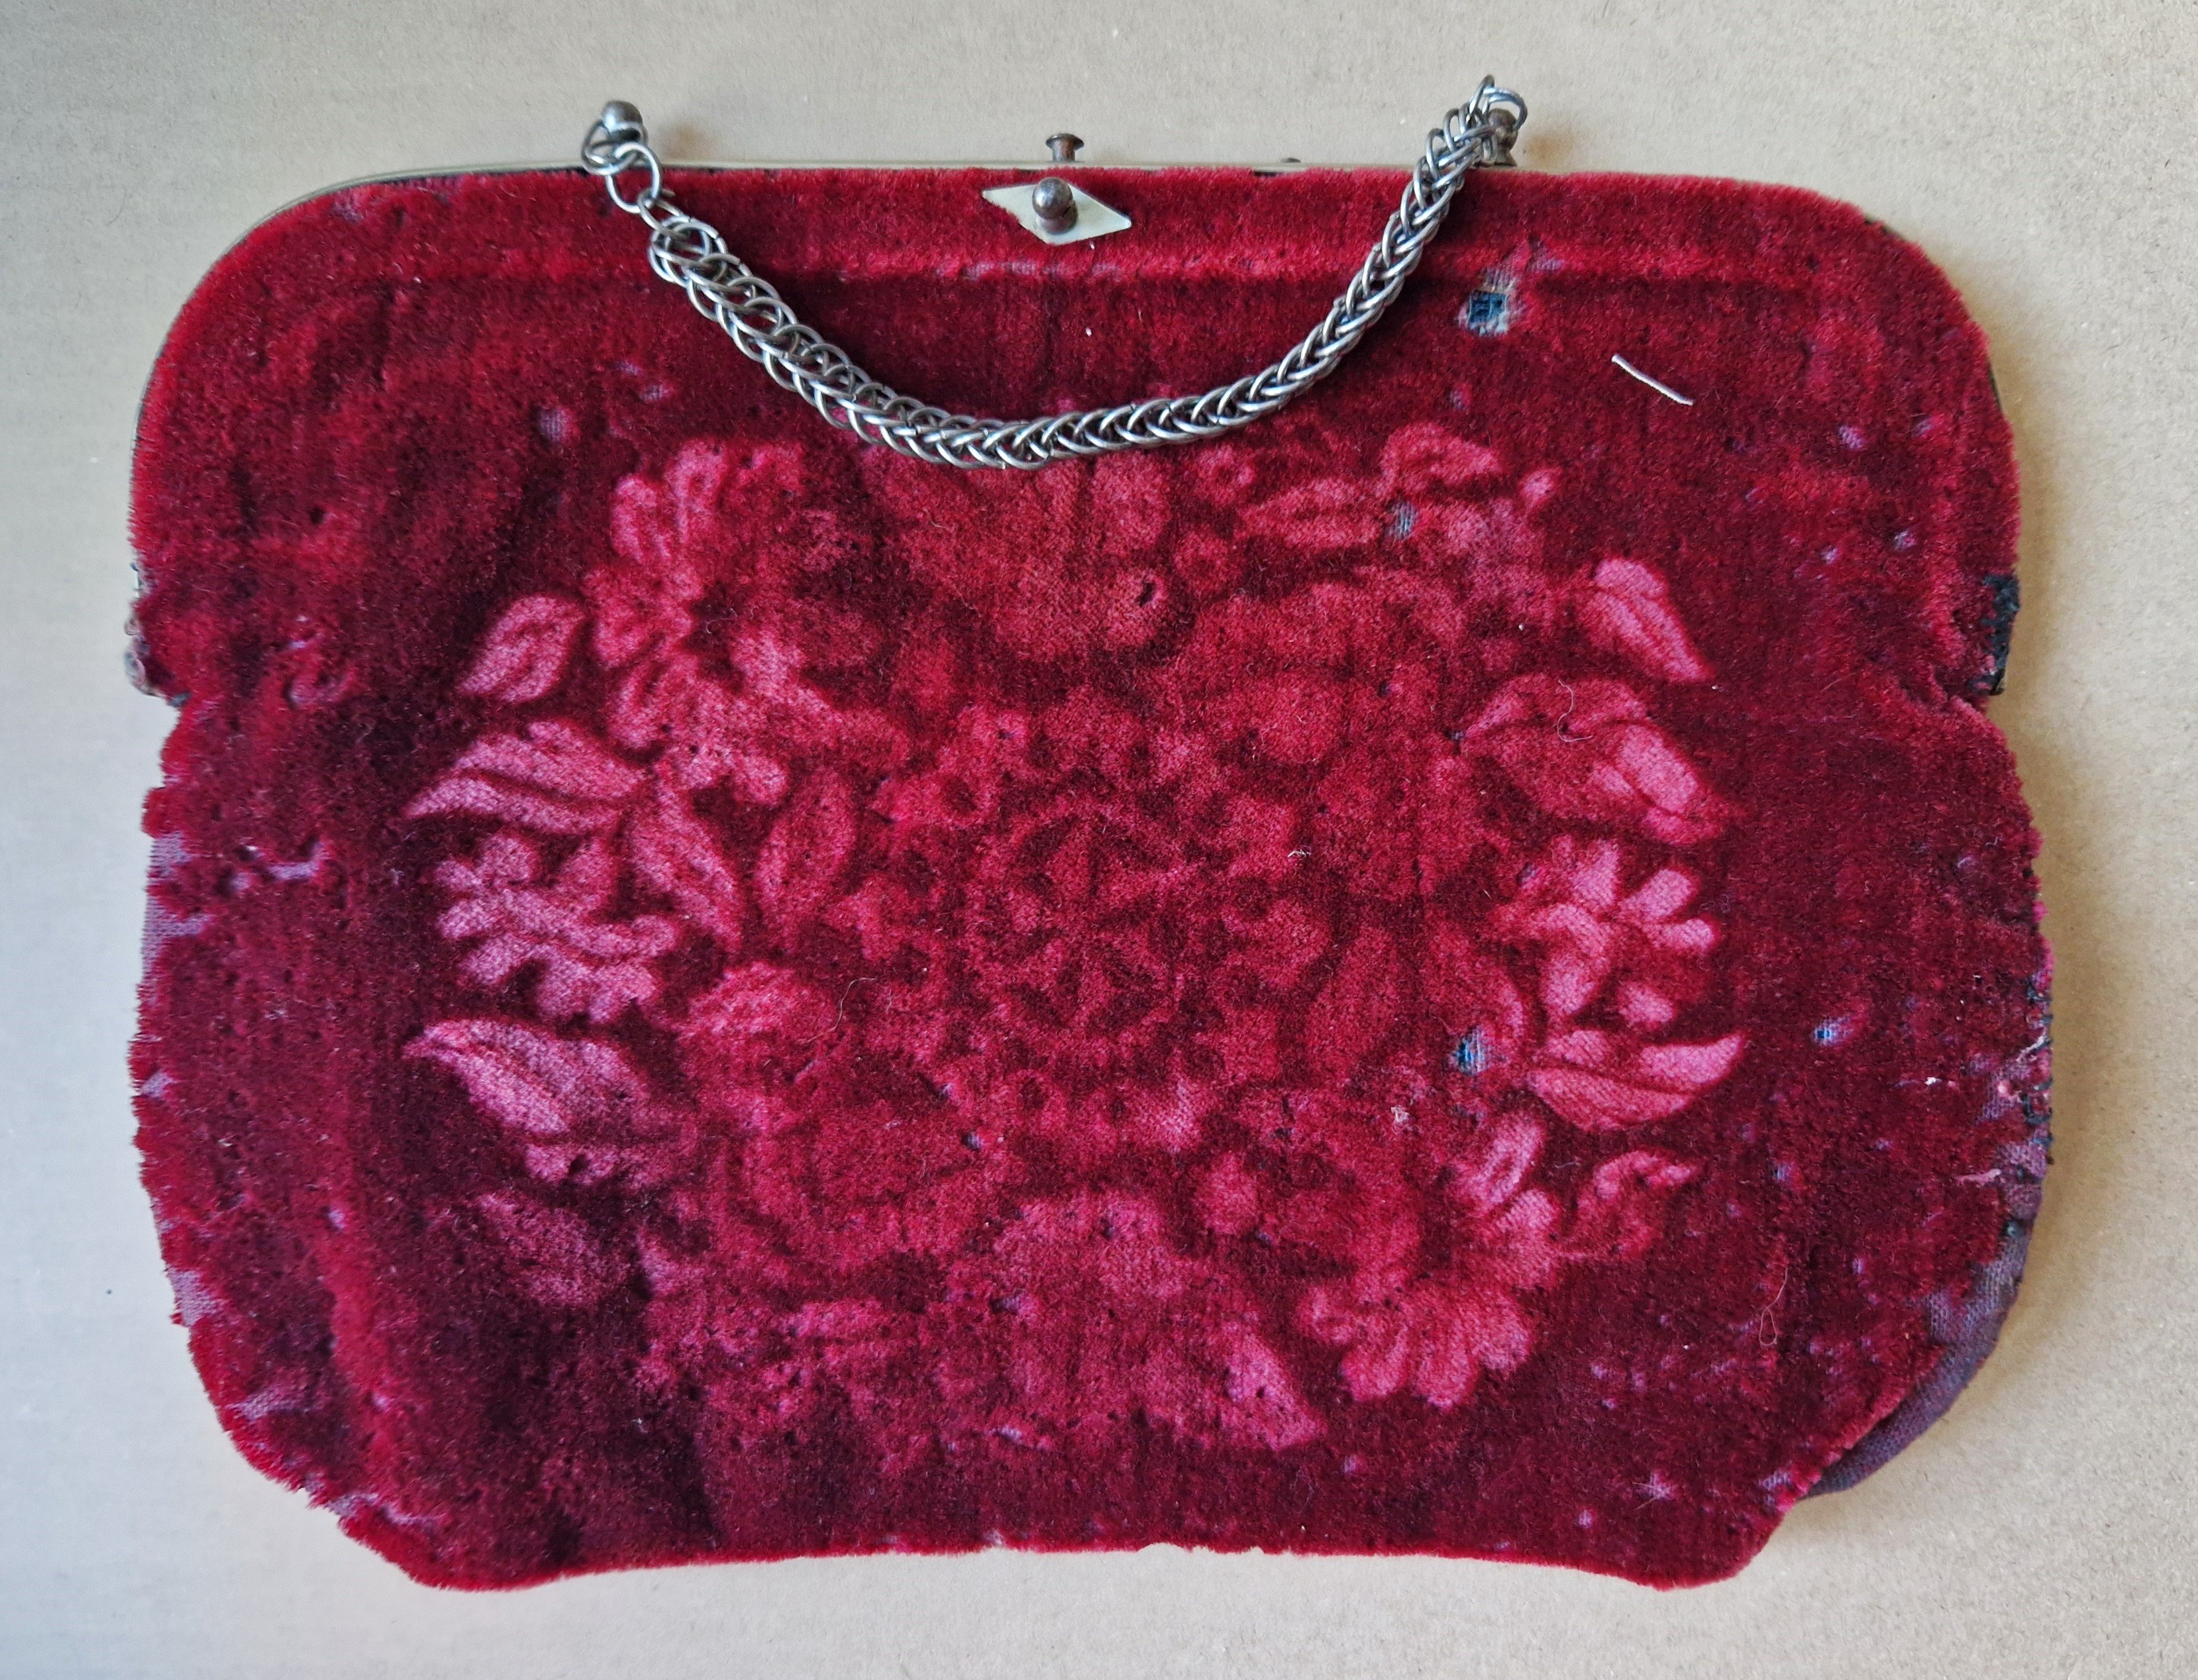 Damenhandtasche aus rotem Plüschsamt, um 1900 (Schloß Wernigerode GmbH RR-R)